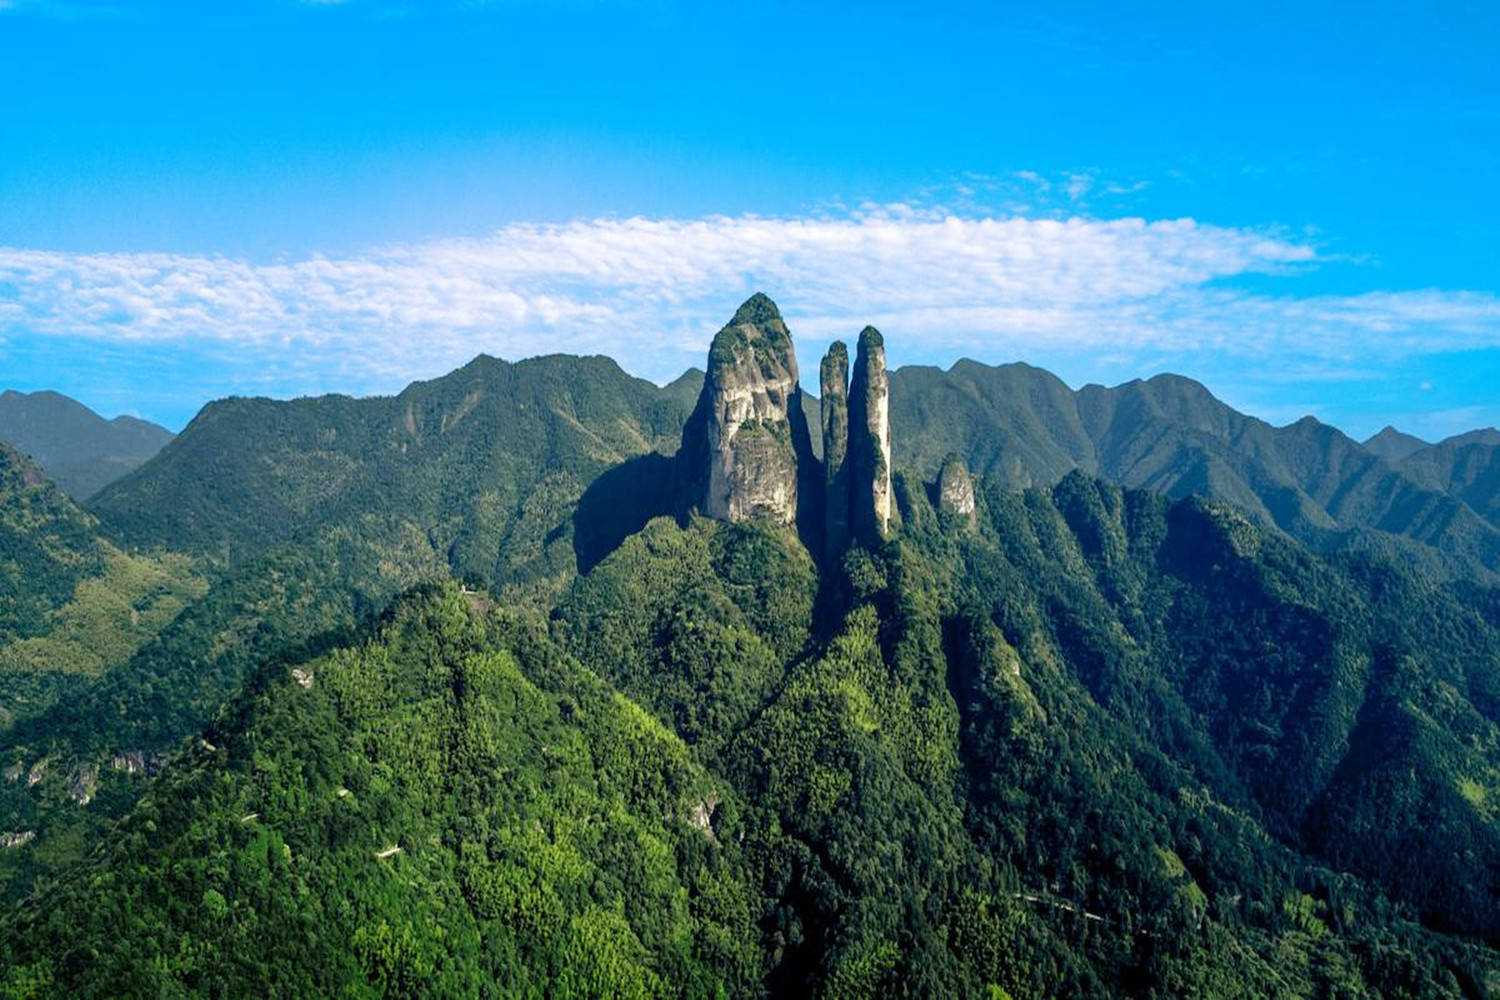 原创浙江山景点有哪些?这四座名山是很多人来浙江旅游的目的地